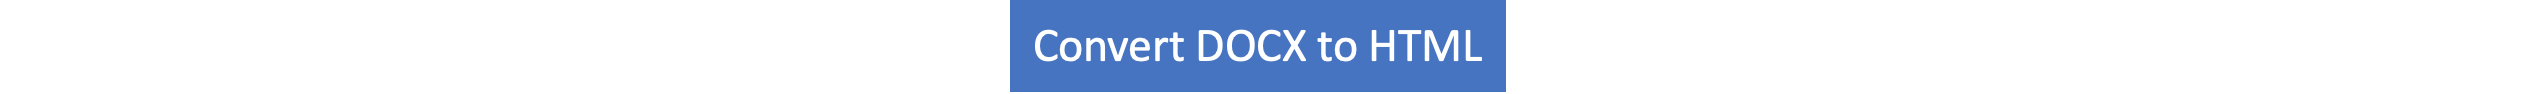 Da DOCX a HTML